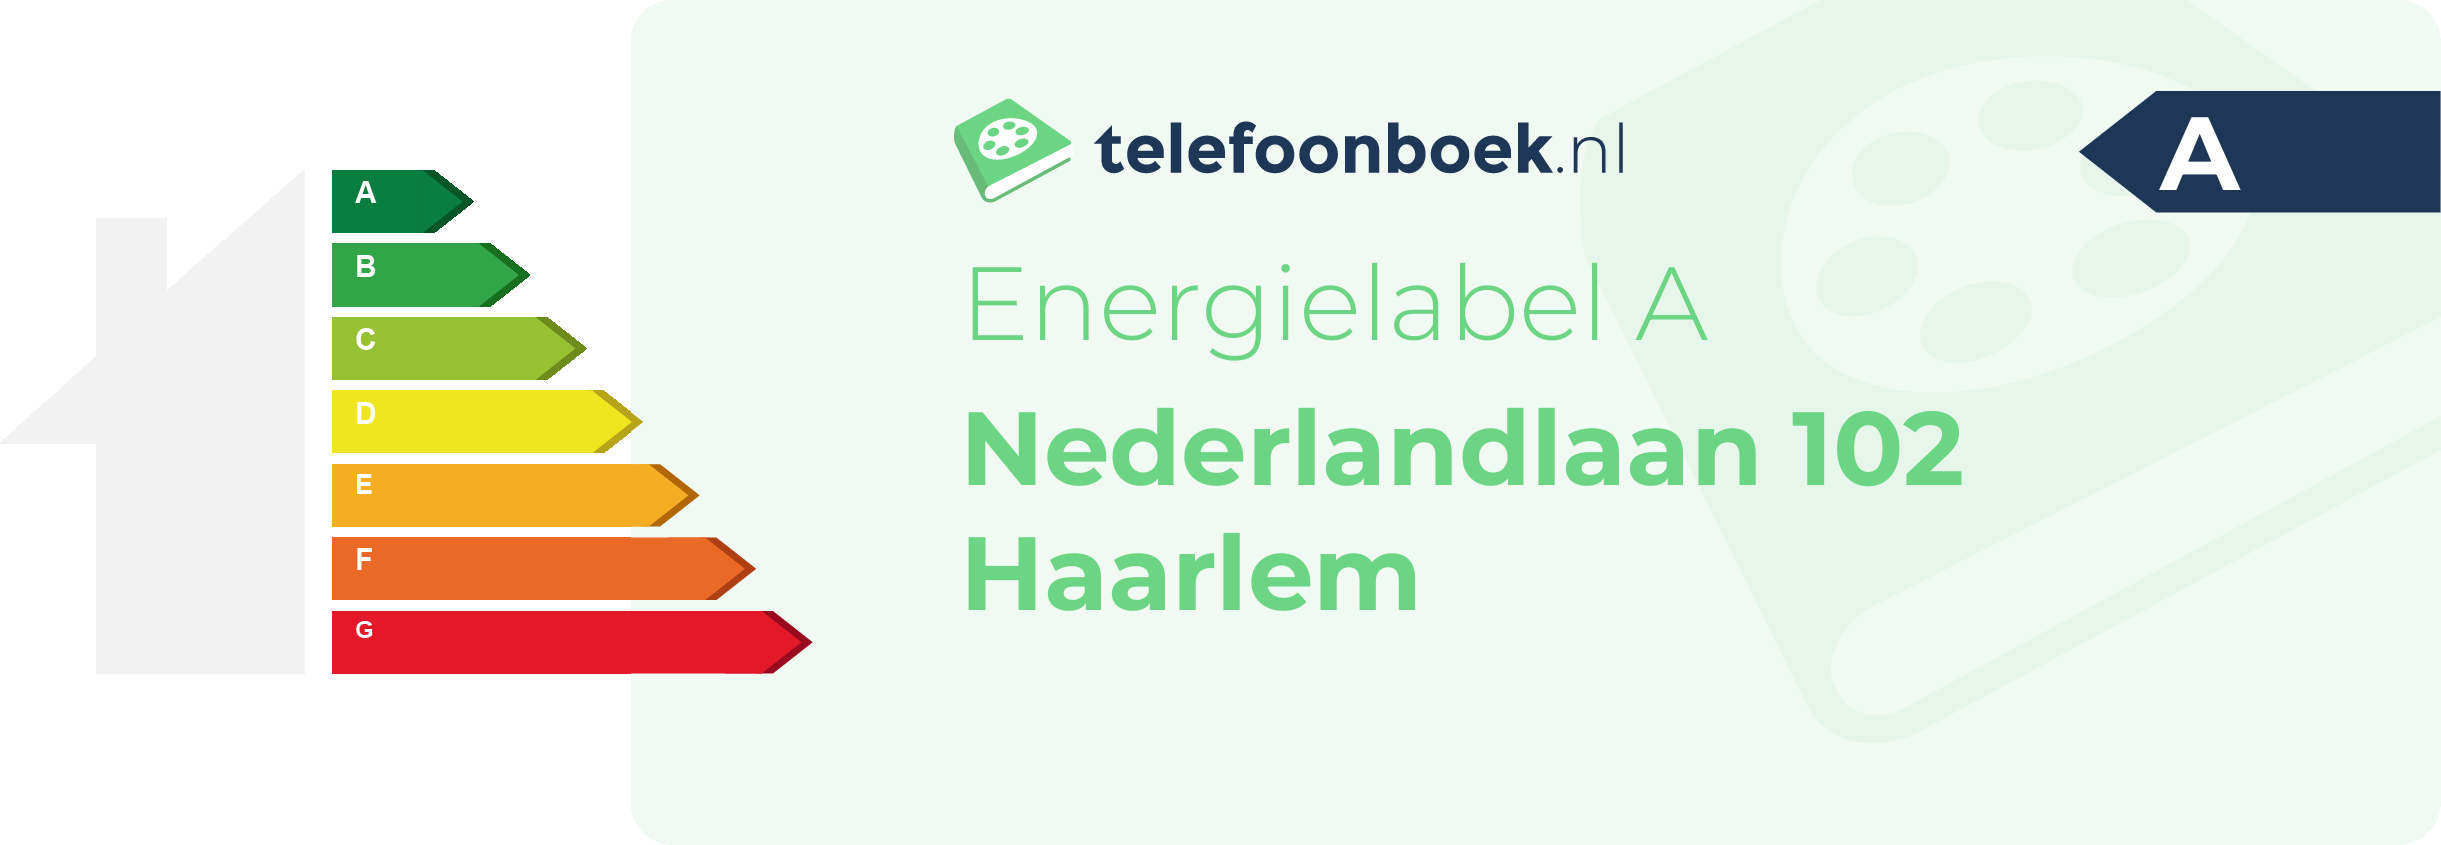 Energielabel Nederlandlaan 102 Haarlem